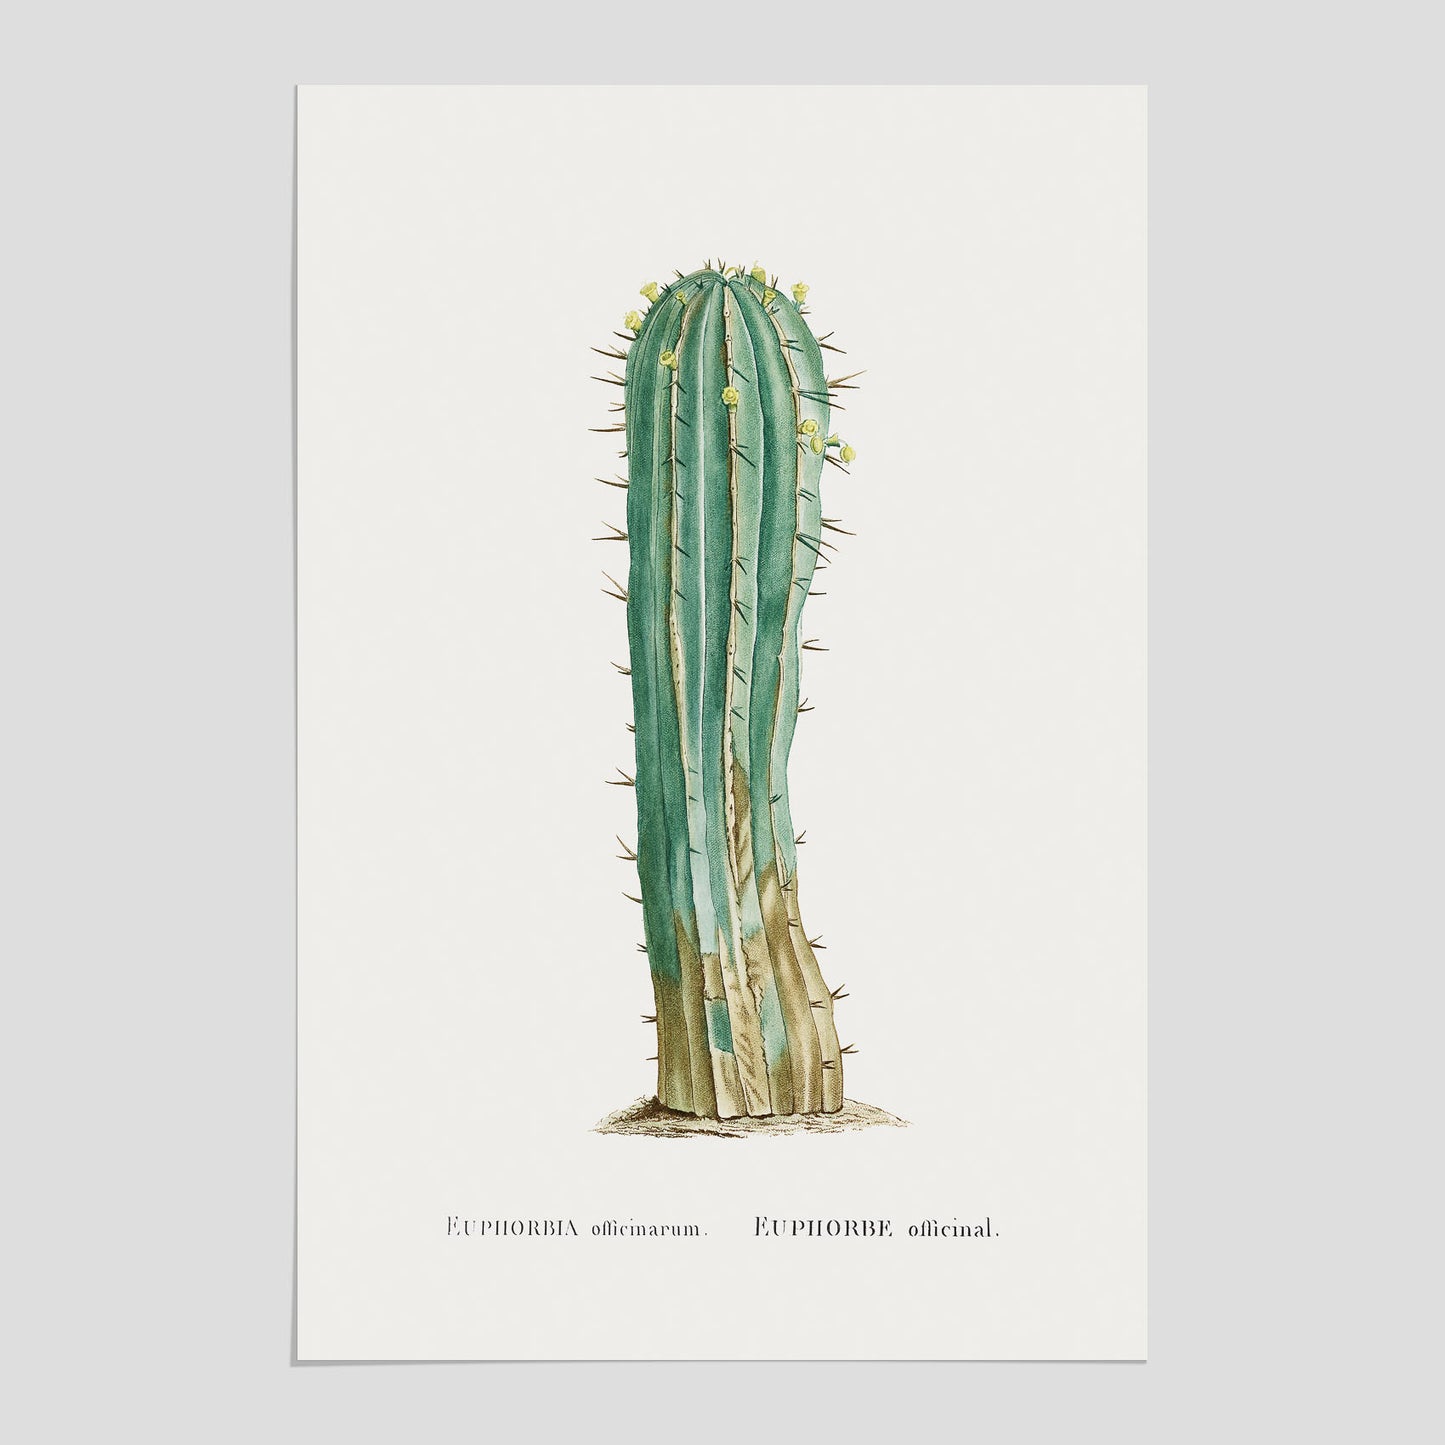 Vintageposter med en illustration av en kaktus